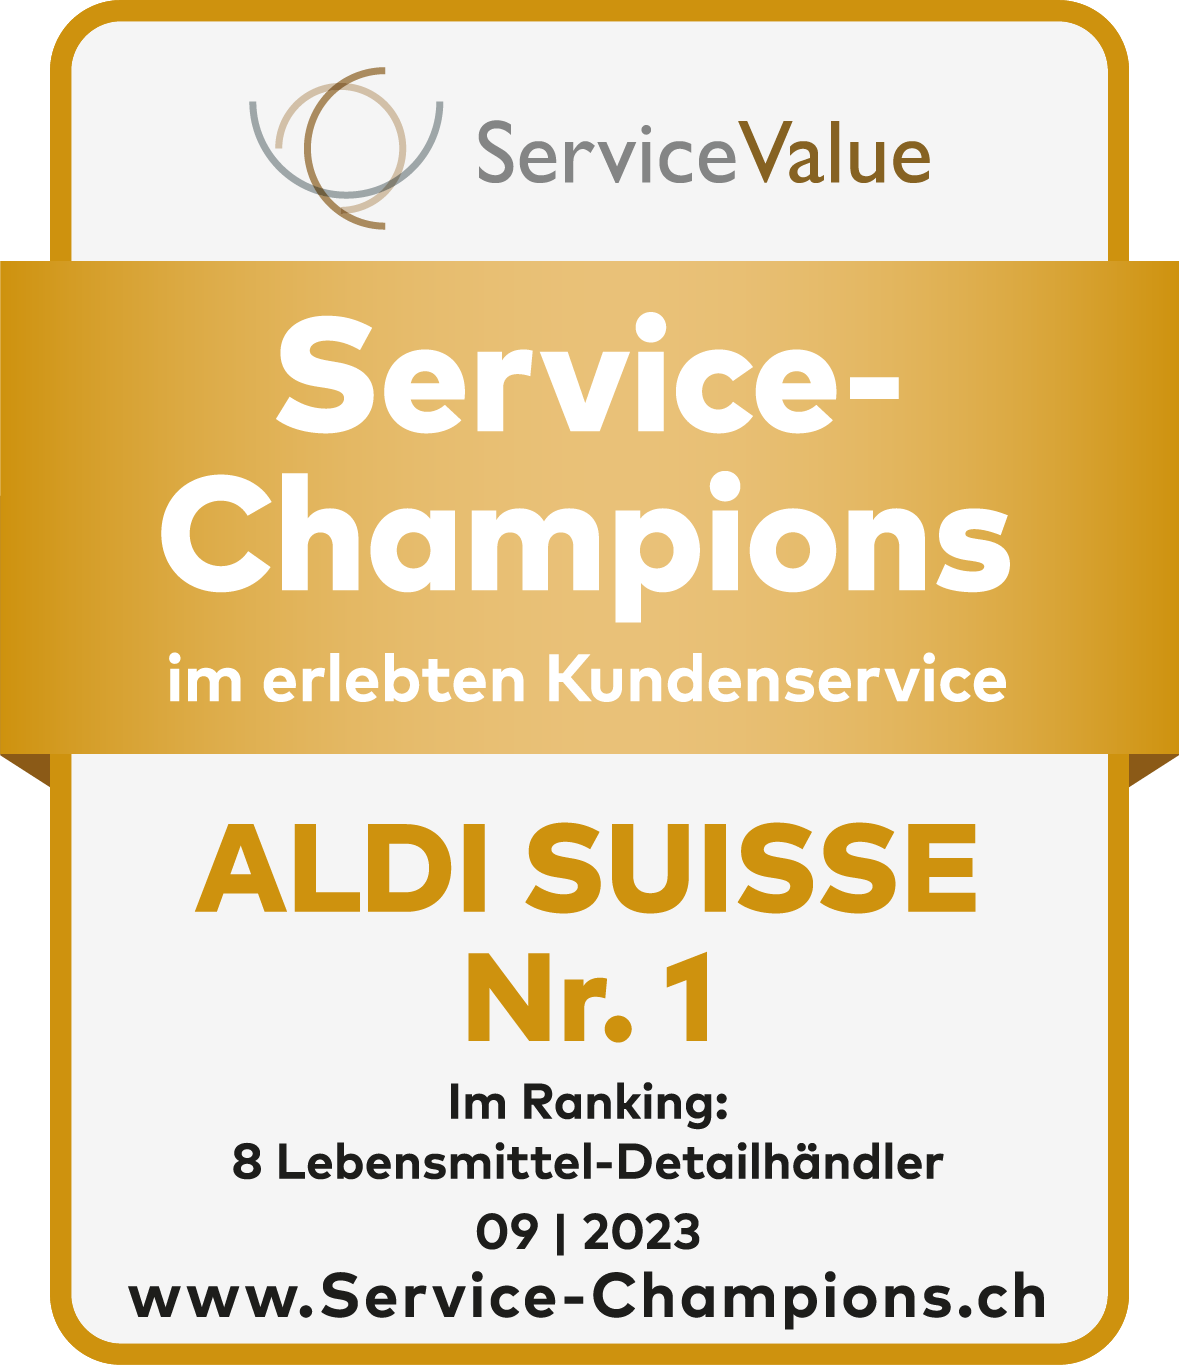 ALDI SUISSE ist 2022 gemäss ServiceValue GmbH Service-Champion im erlebten Kundenservice.